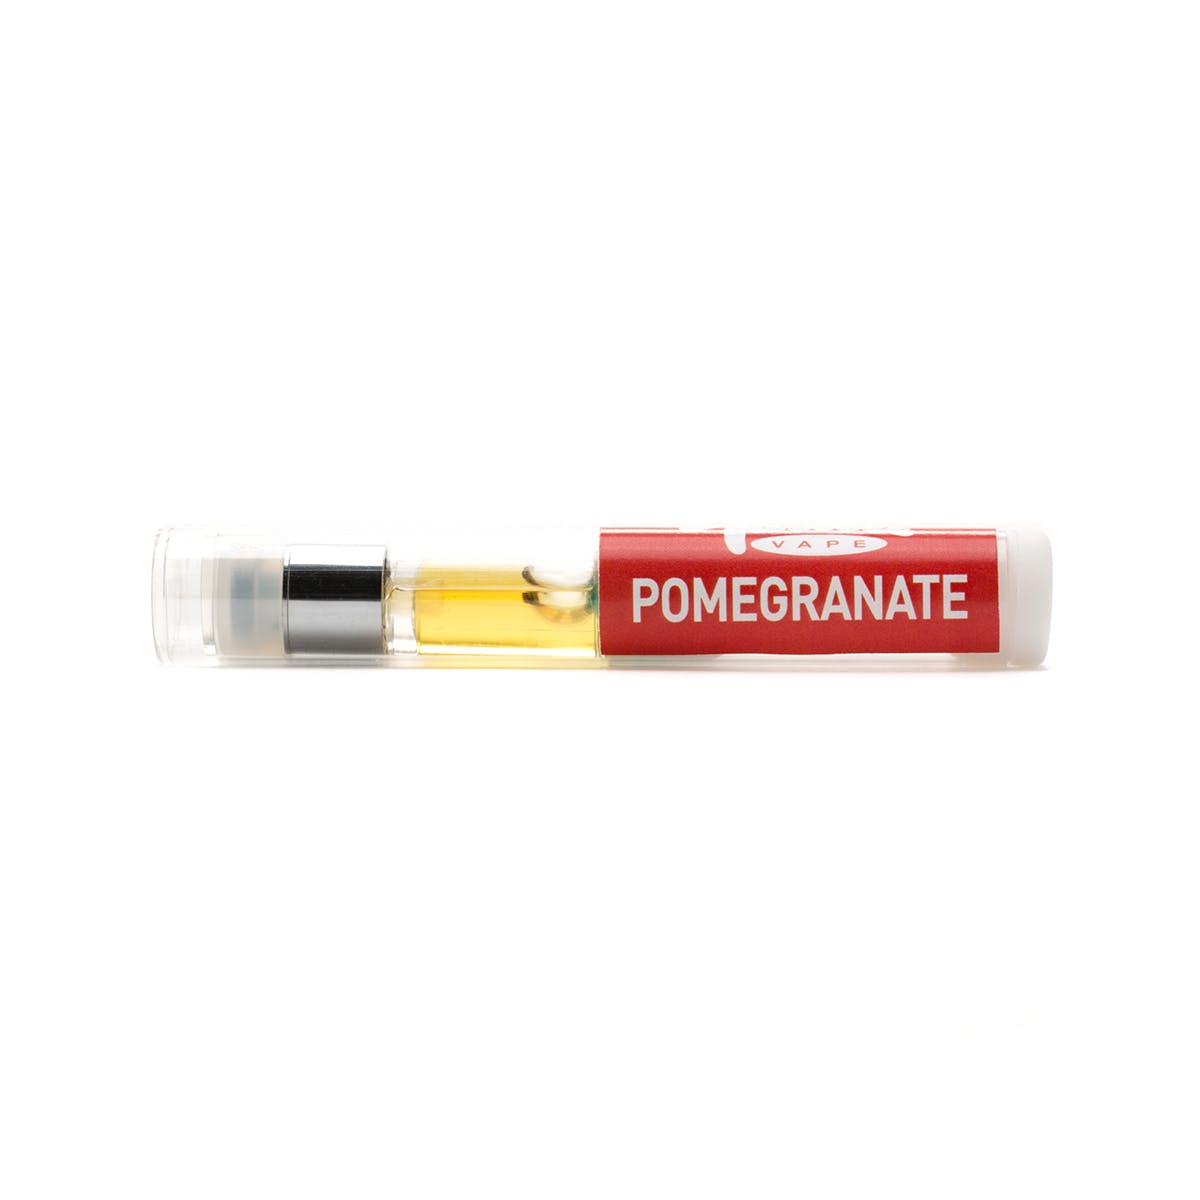 Pomegranate Tasteee Cartridge